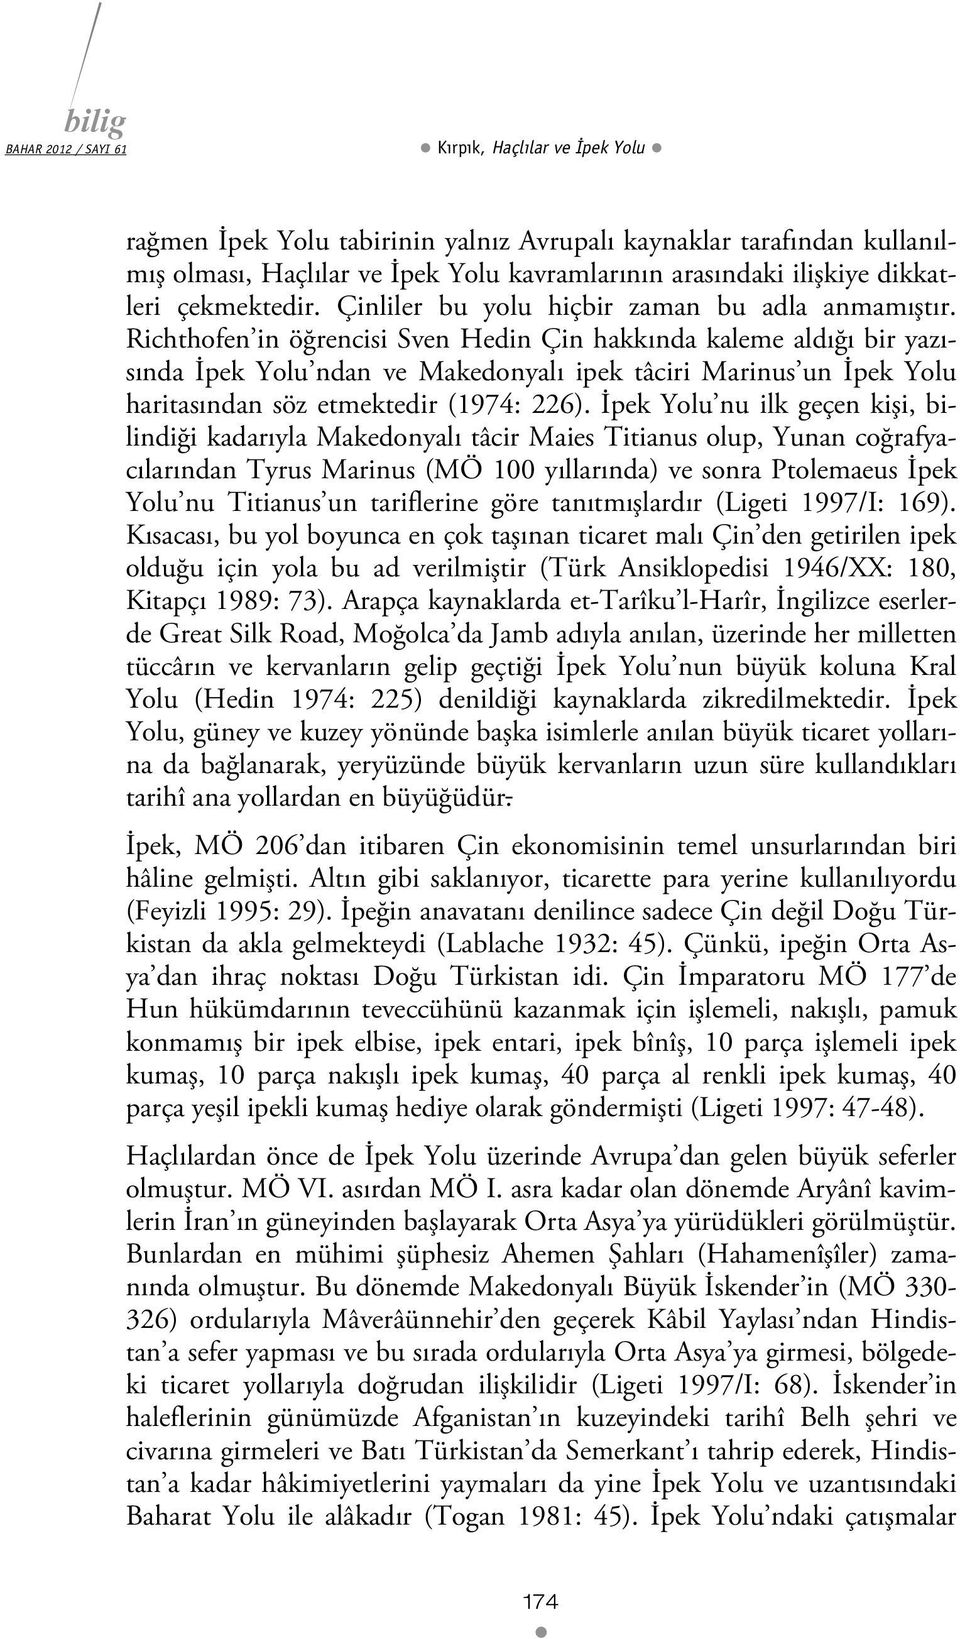 Richthofen in öğrencisi Sven Hedin Çin hakkında kaleme aldığı bir yazısında İpek Yolu ndan ve Makedonyalı ipek tâciri Marinus un İpek Yolu haritasından söz etmektedir (1974: 226).